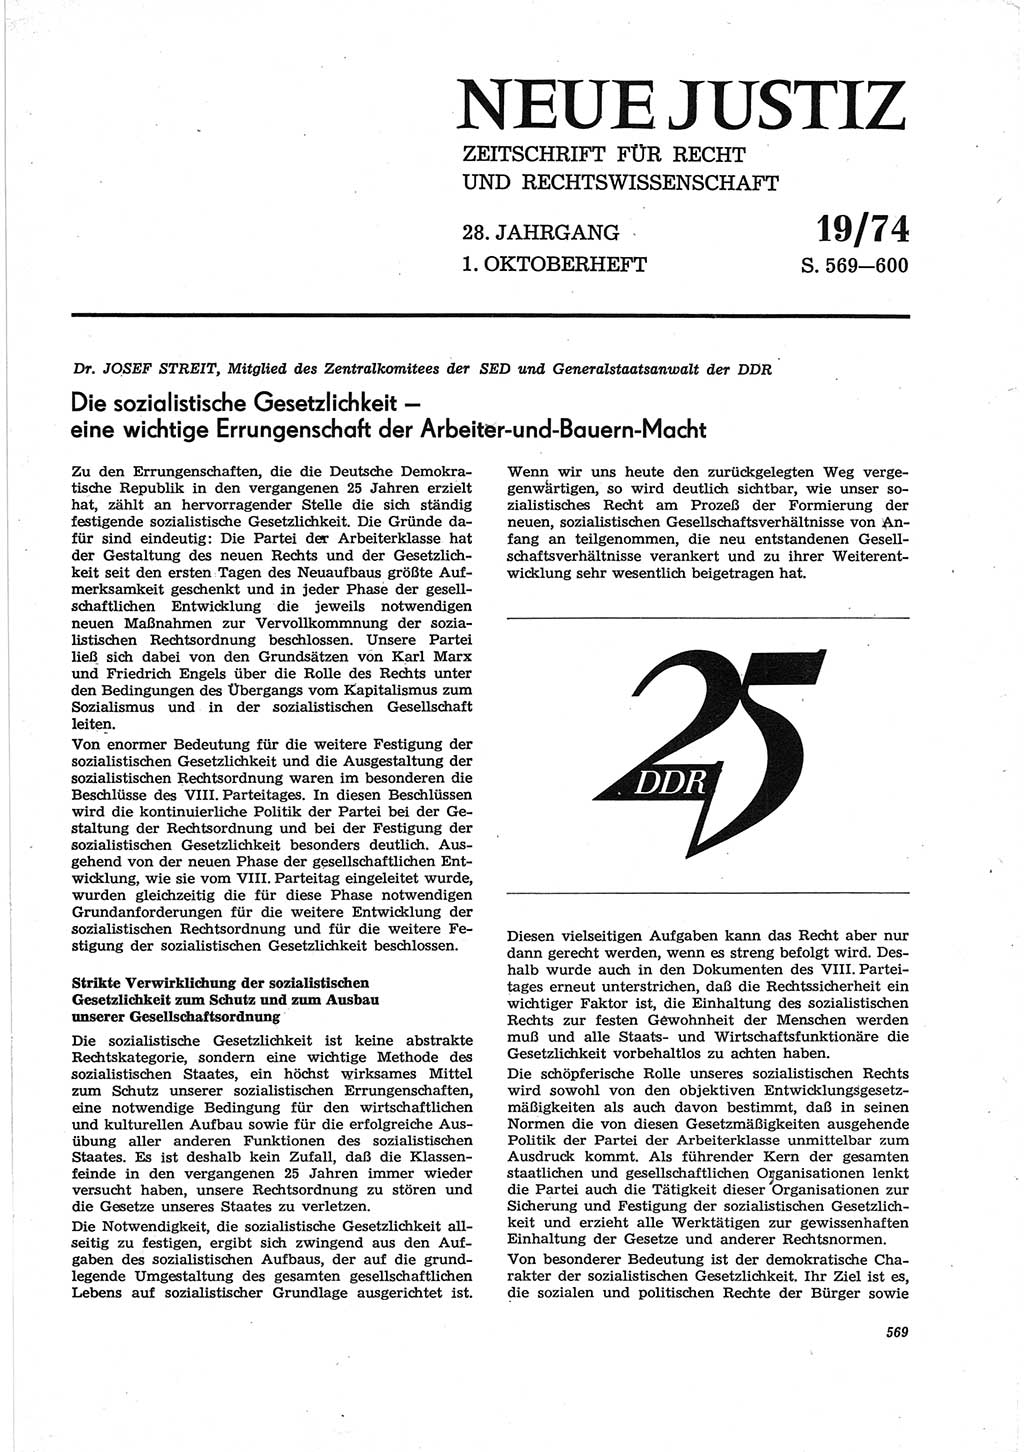 Neue Justiz (NJ), Zeitschrift für Recht und Rechtswissenschaft [Deutsche Demokratische Republik (DDR)], 28. Jahrgang 1974, Seite 569 (NJ DDR 1974, S. 569)